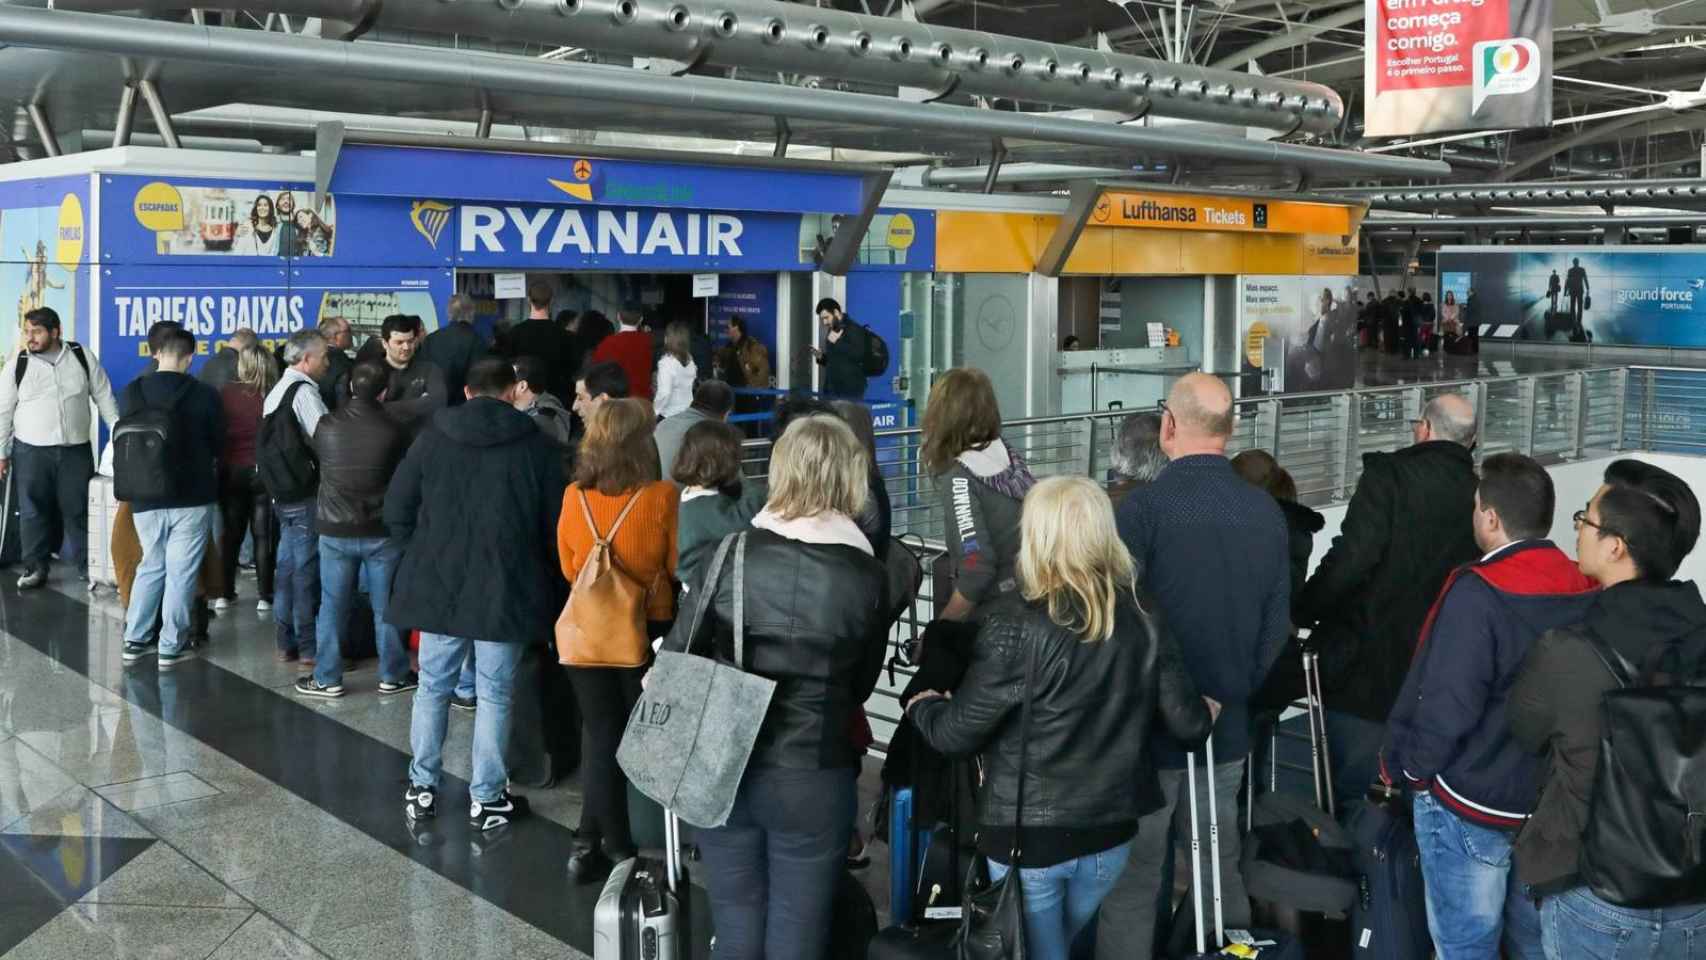 Cola de pasajeros por la huelga de auxiliares de vuelo en Portugal a principios de abril / EFE